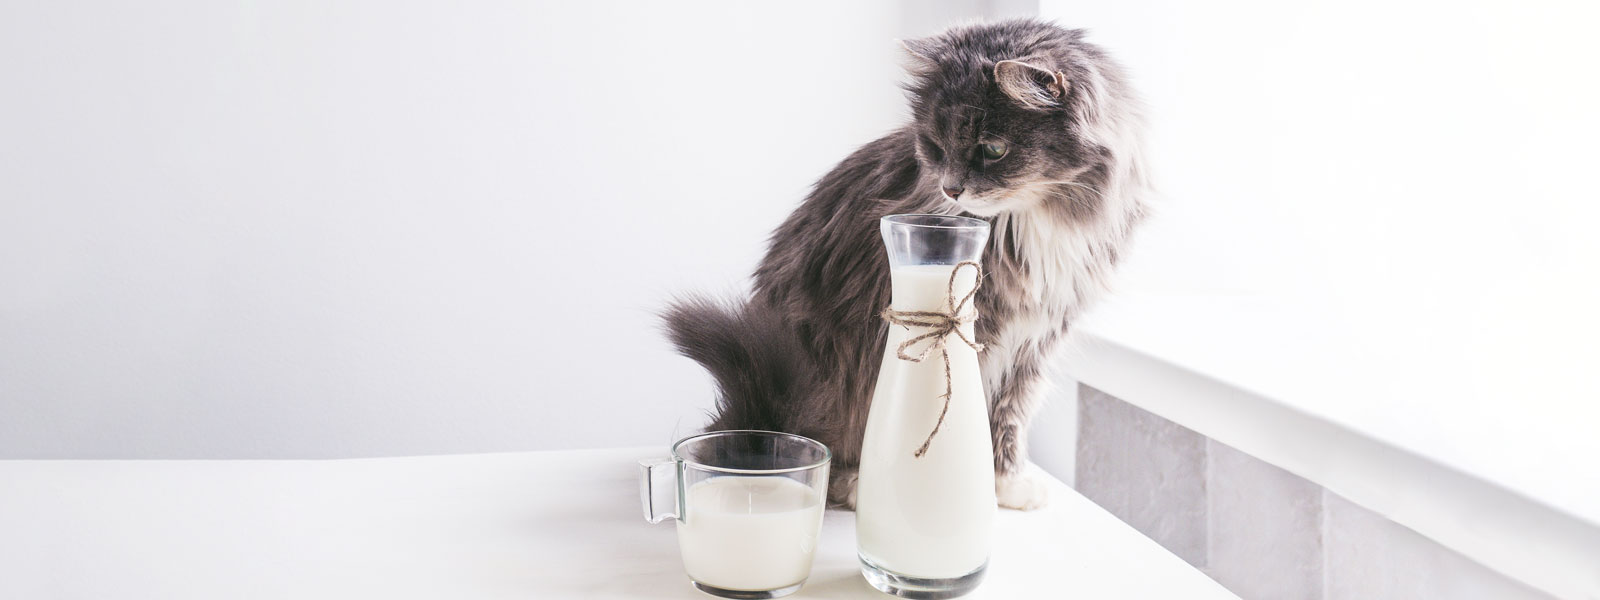 Eine Katze mit langem Fell sitzt auf dem Tisch neben einem Glas und einer Karaffe Milch.